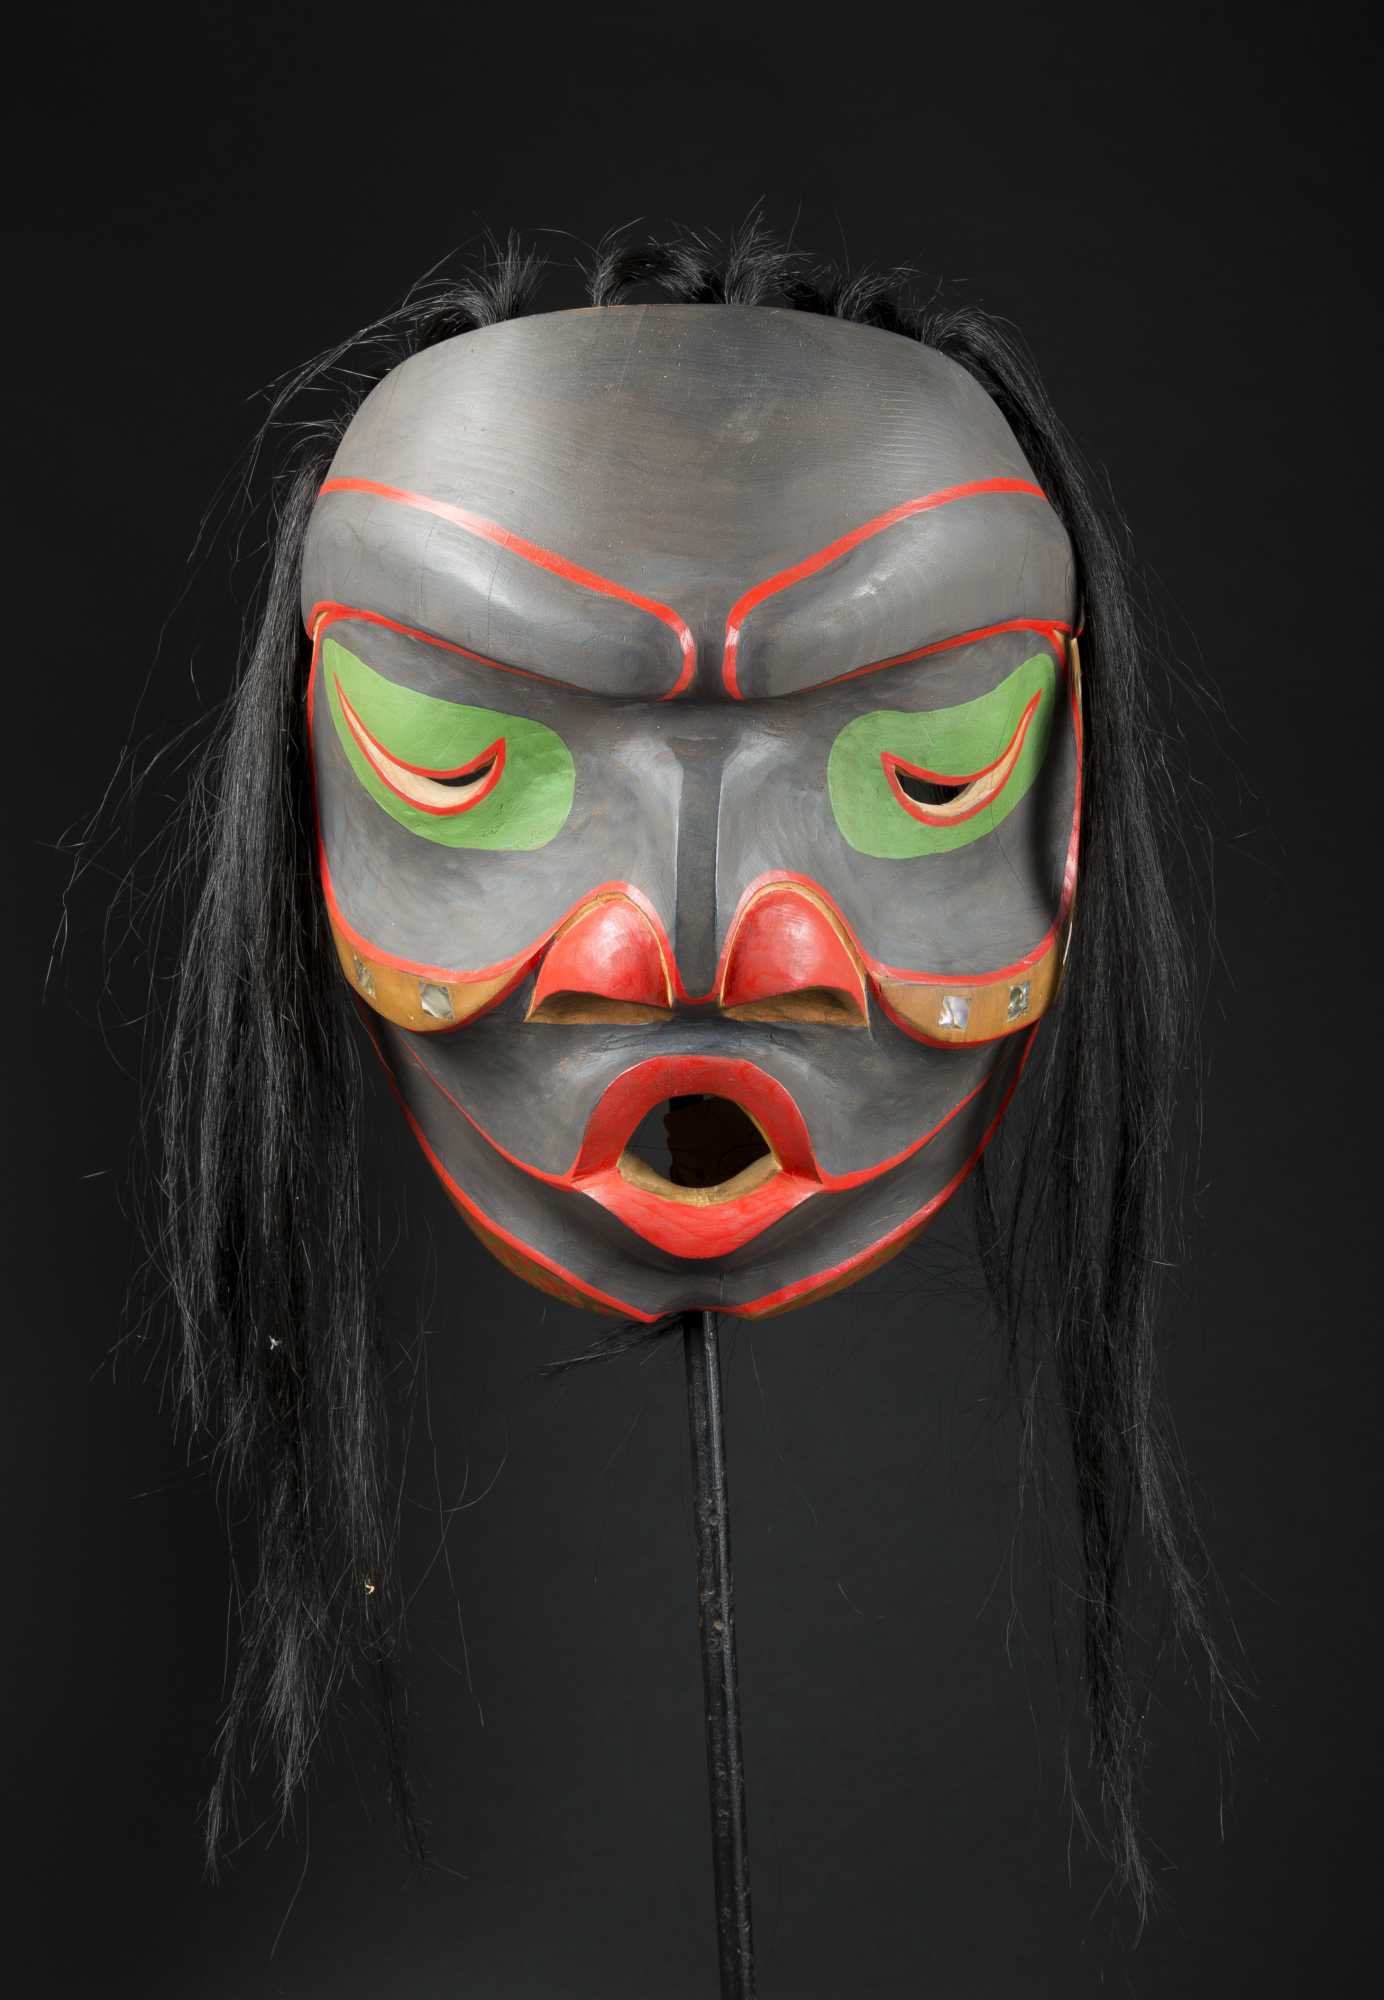 Decorated mask photo